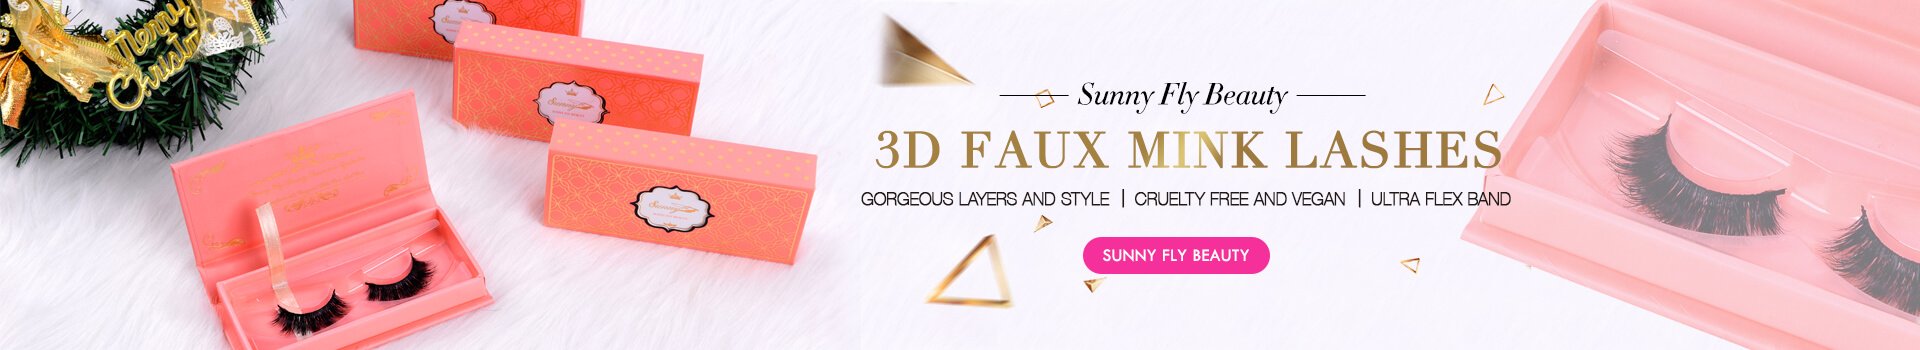 3D Faux Mink Lashes SD58